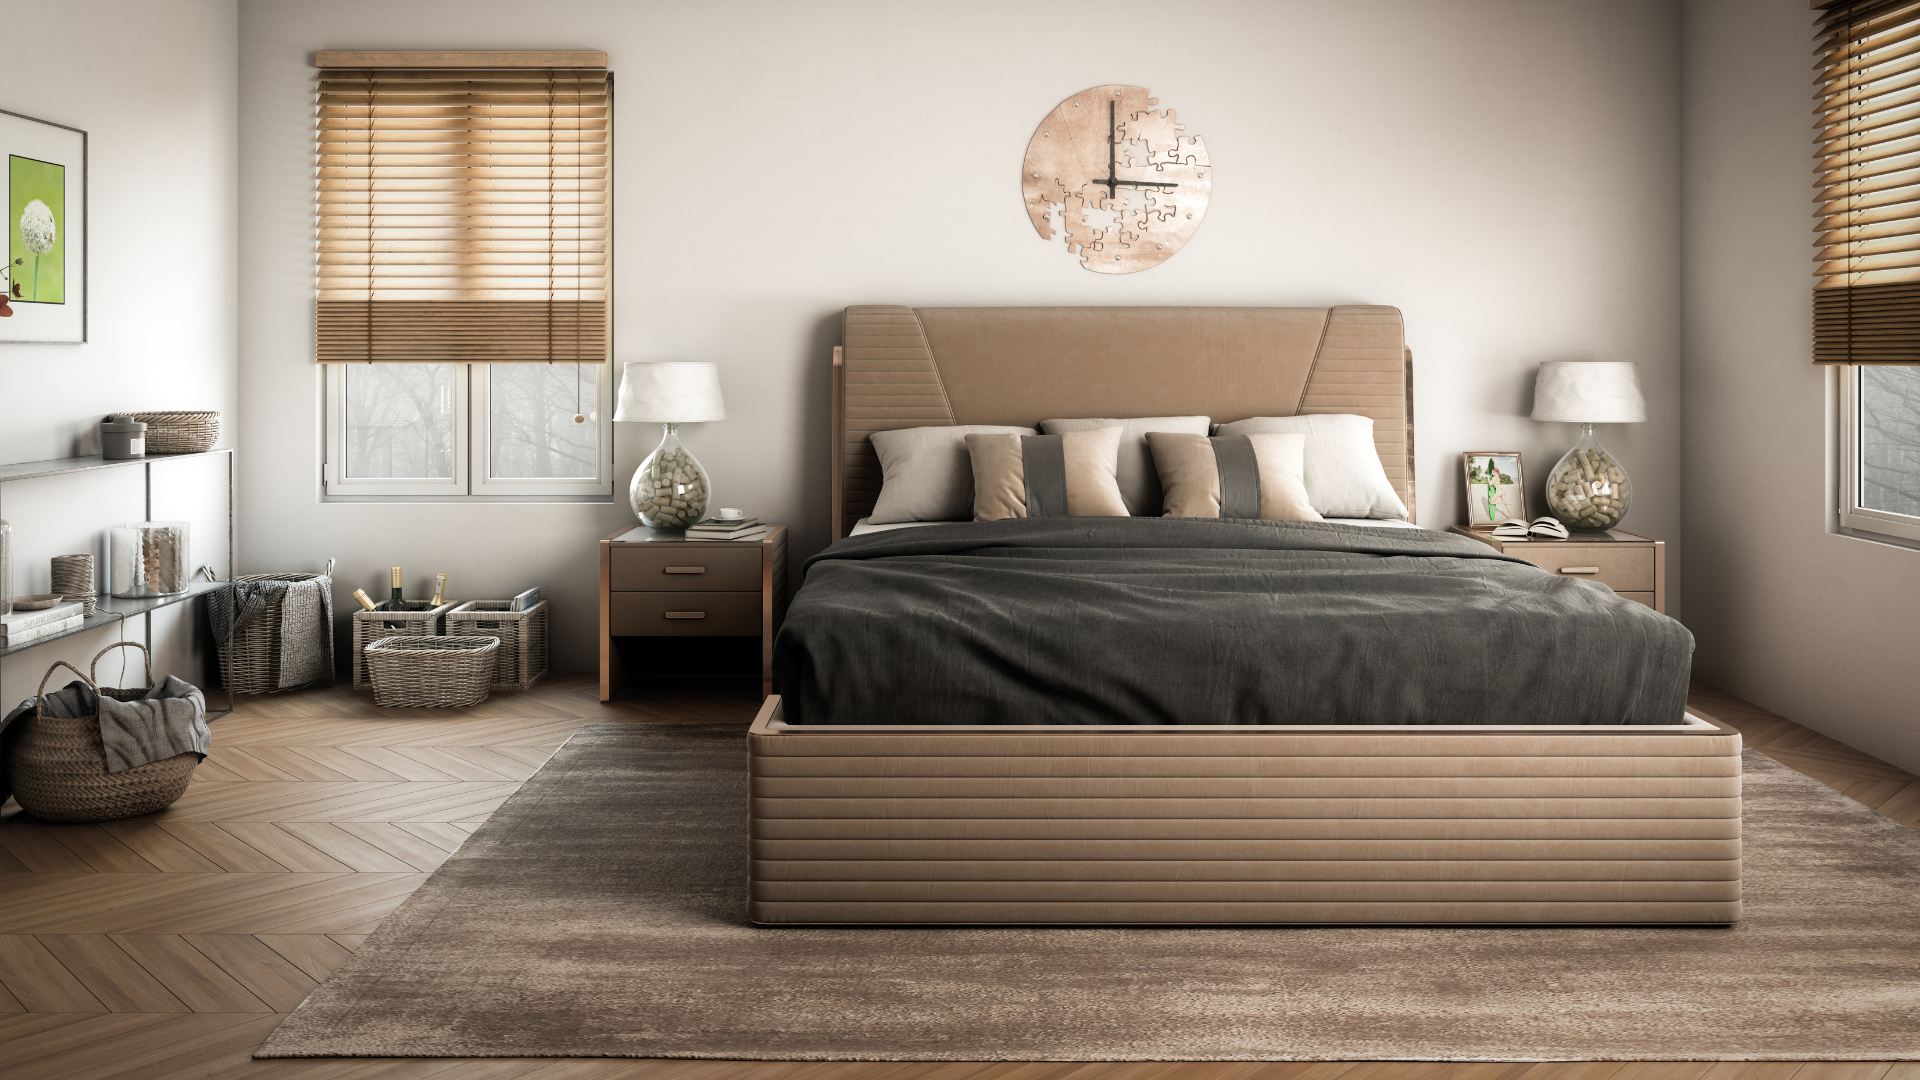 Scandinavian Master Bedroom Interior Design with Hardwood Chevron Floors and Accent Rug